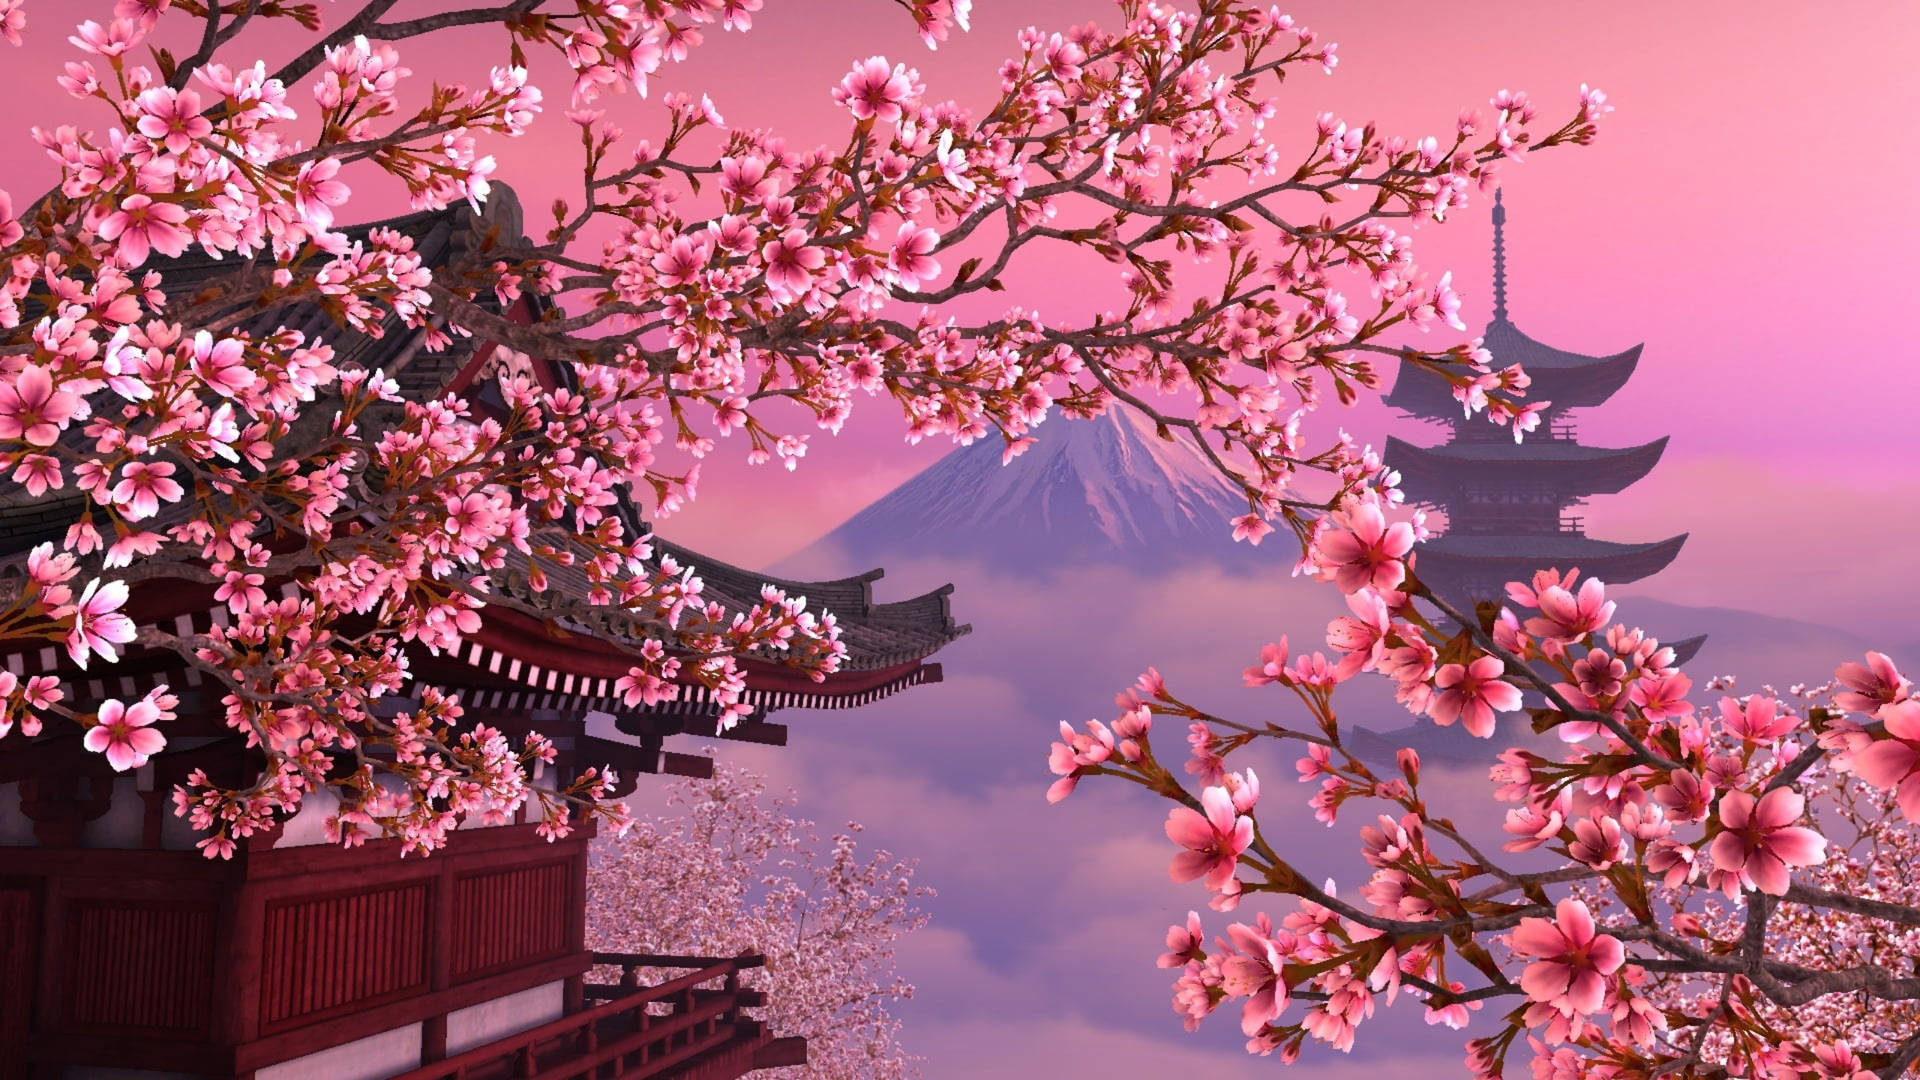 Japan Mt. Fuji Digital Artwork Picture